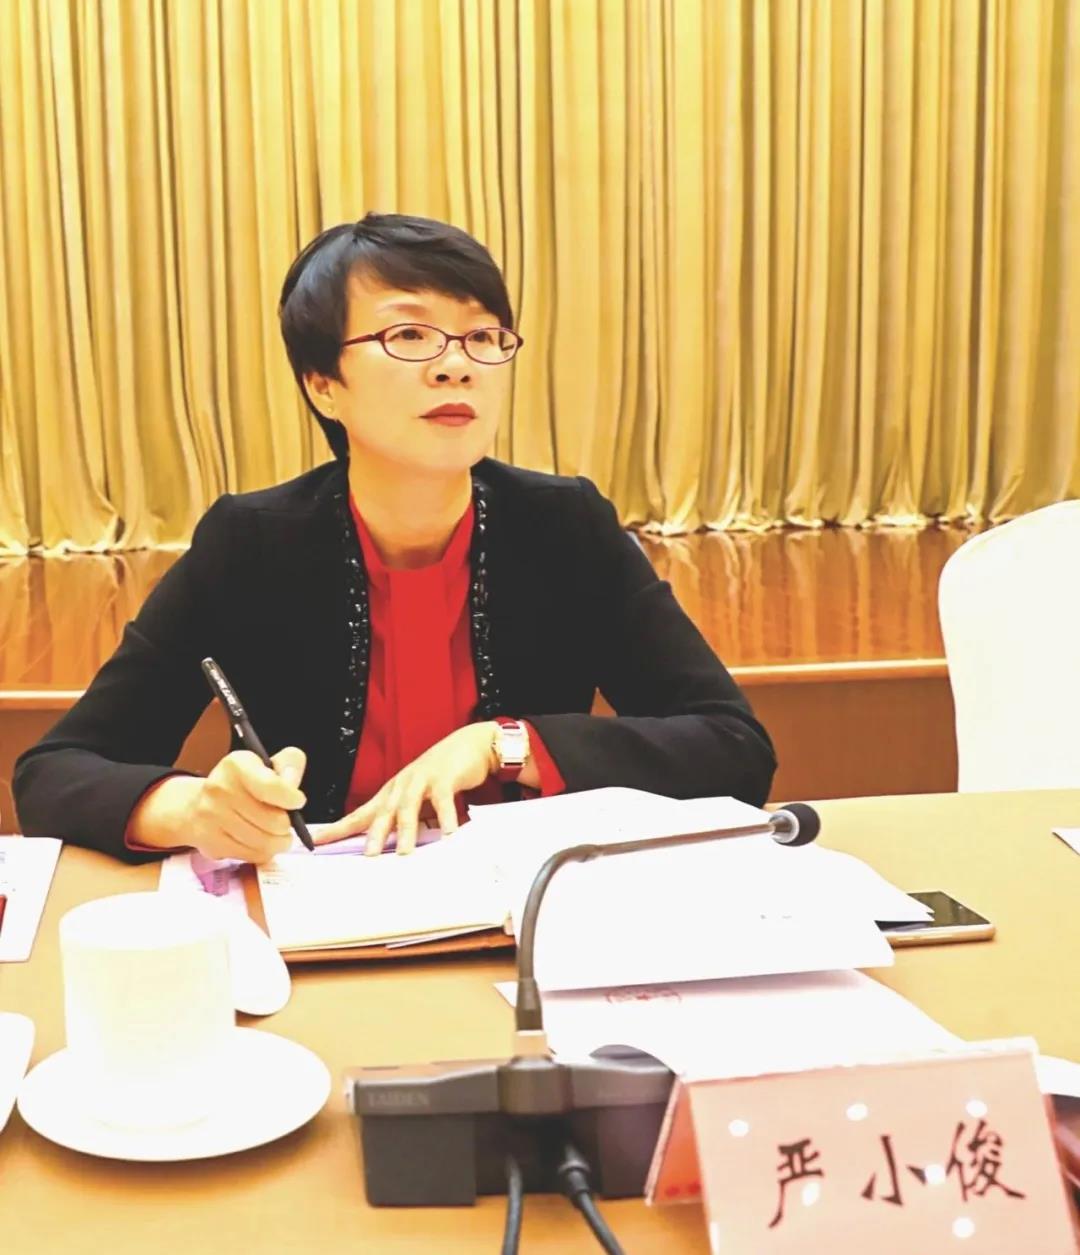 金华市委副书记,政法委书记陈玲玲与女企业家座谈,她这样勉励大家